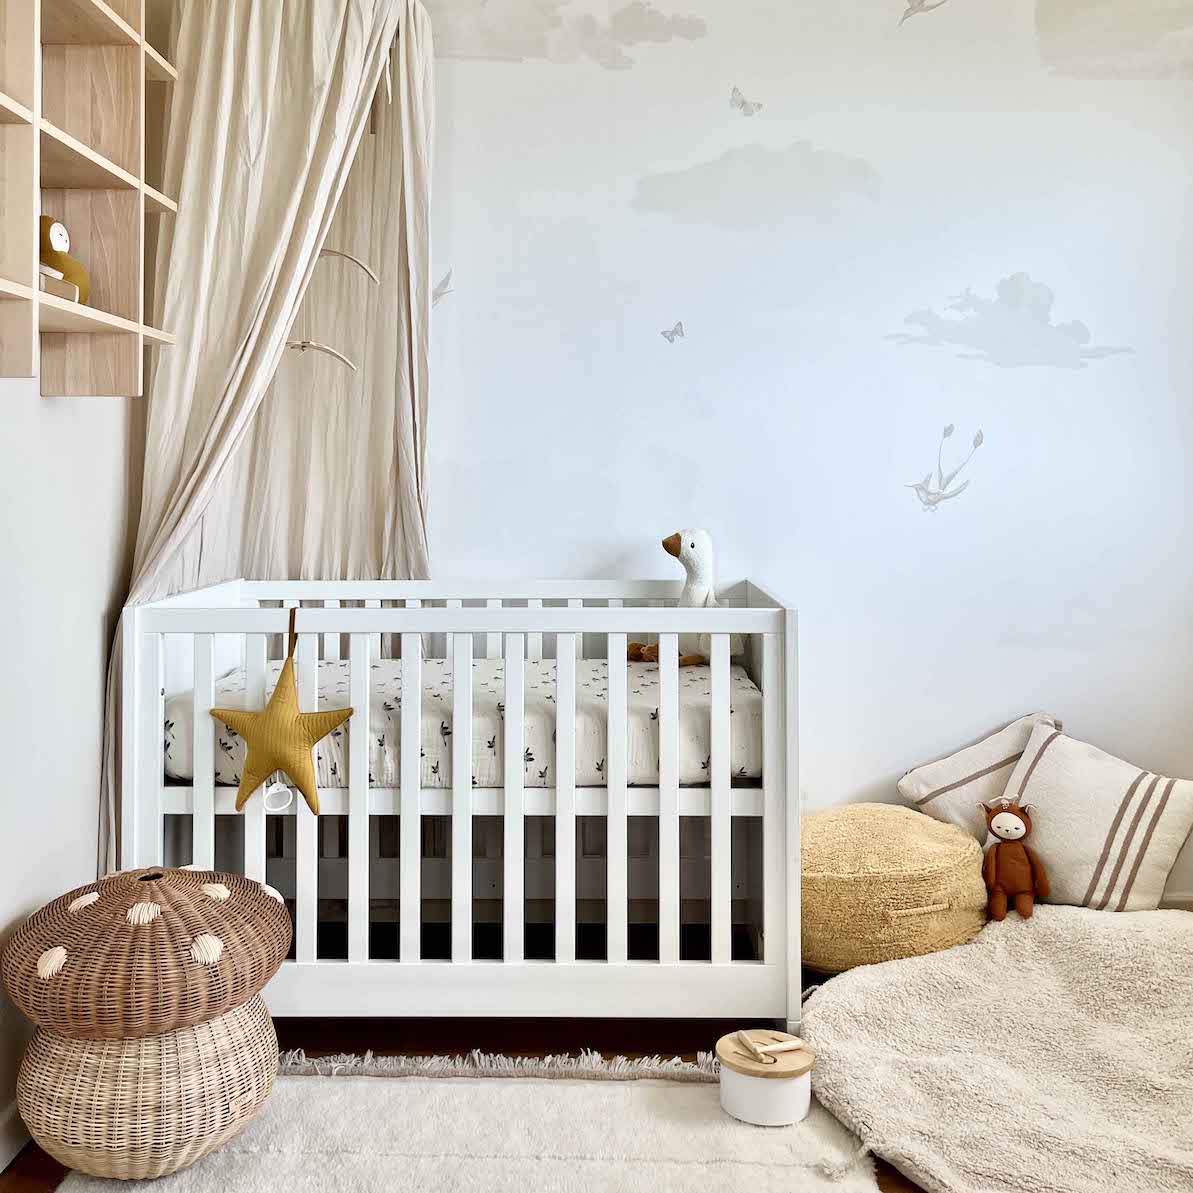 Tapis enfant fille hibou design tapis chambre bébé chambre enfant faci